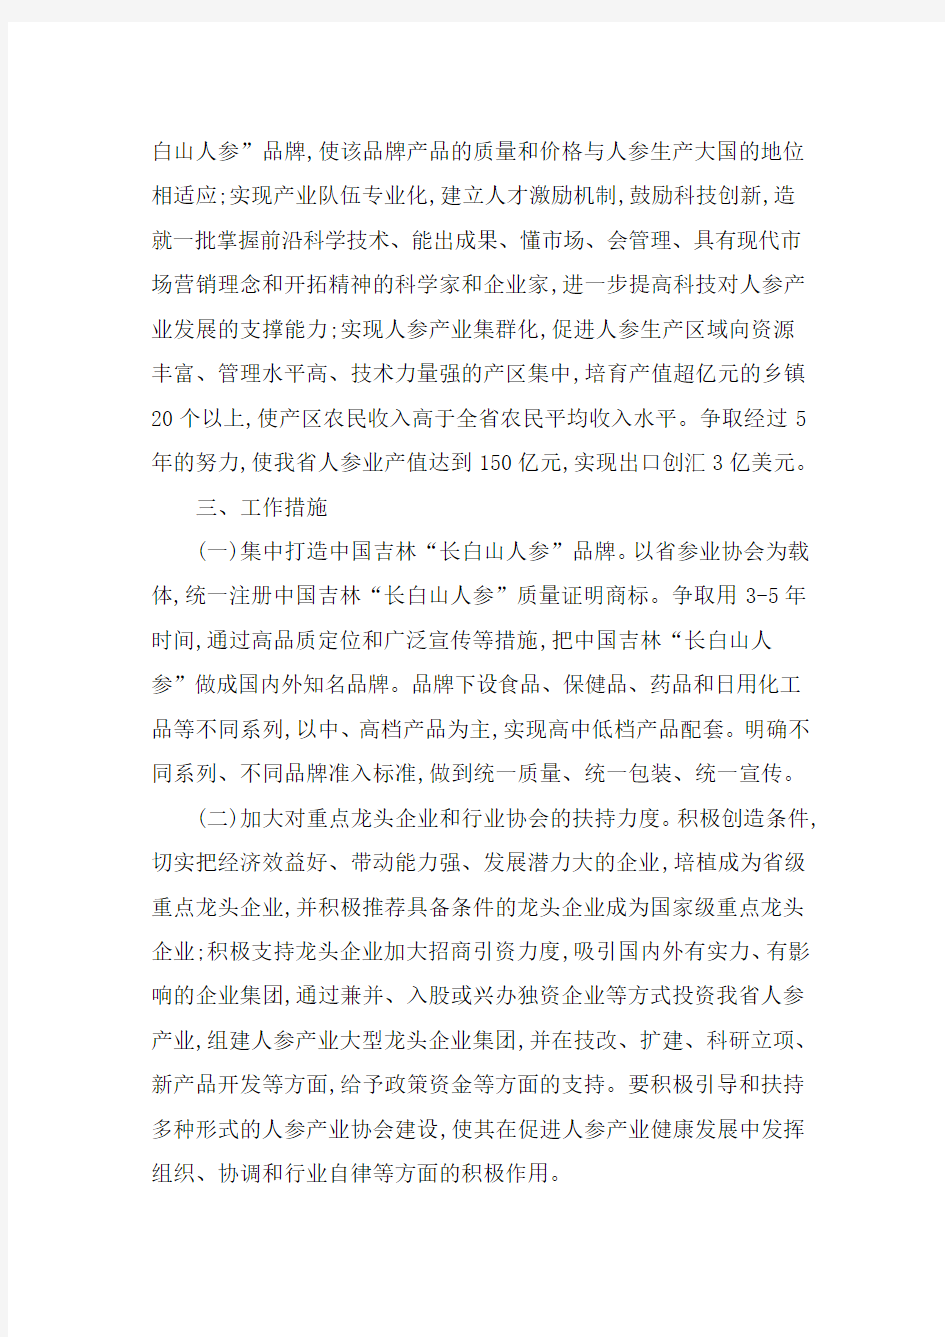 吉林省人民政府文件《关于加快人参产业发展的意见》